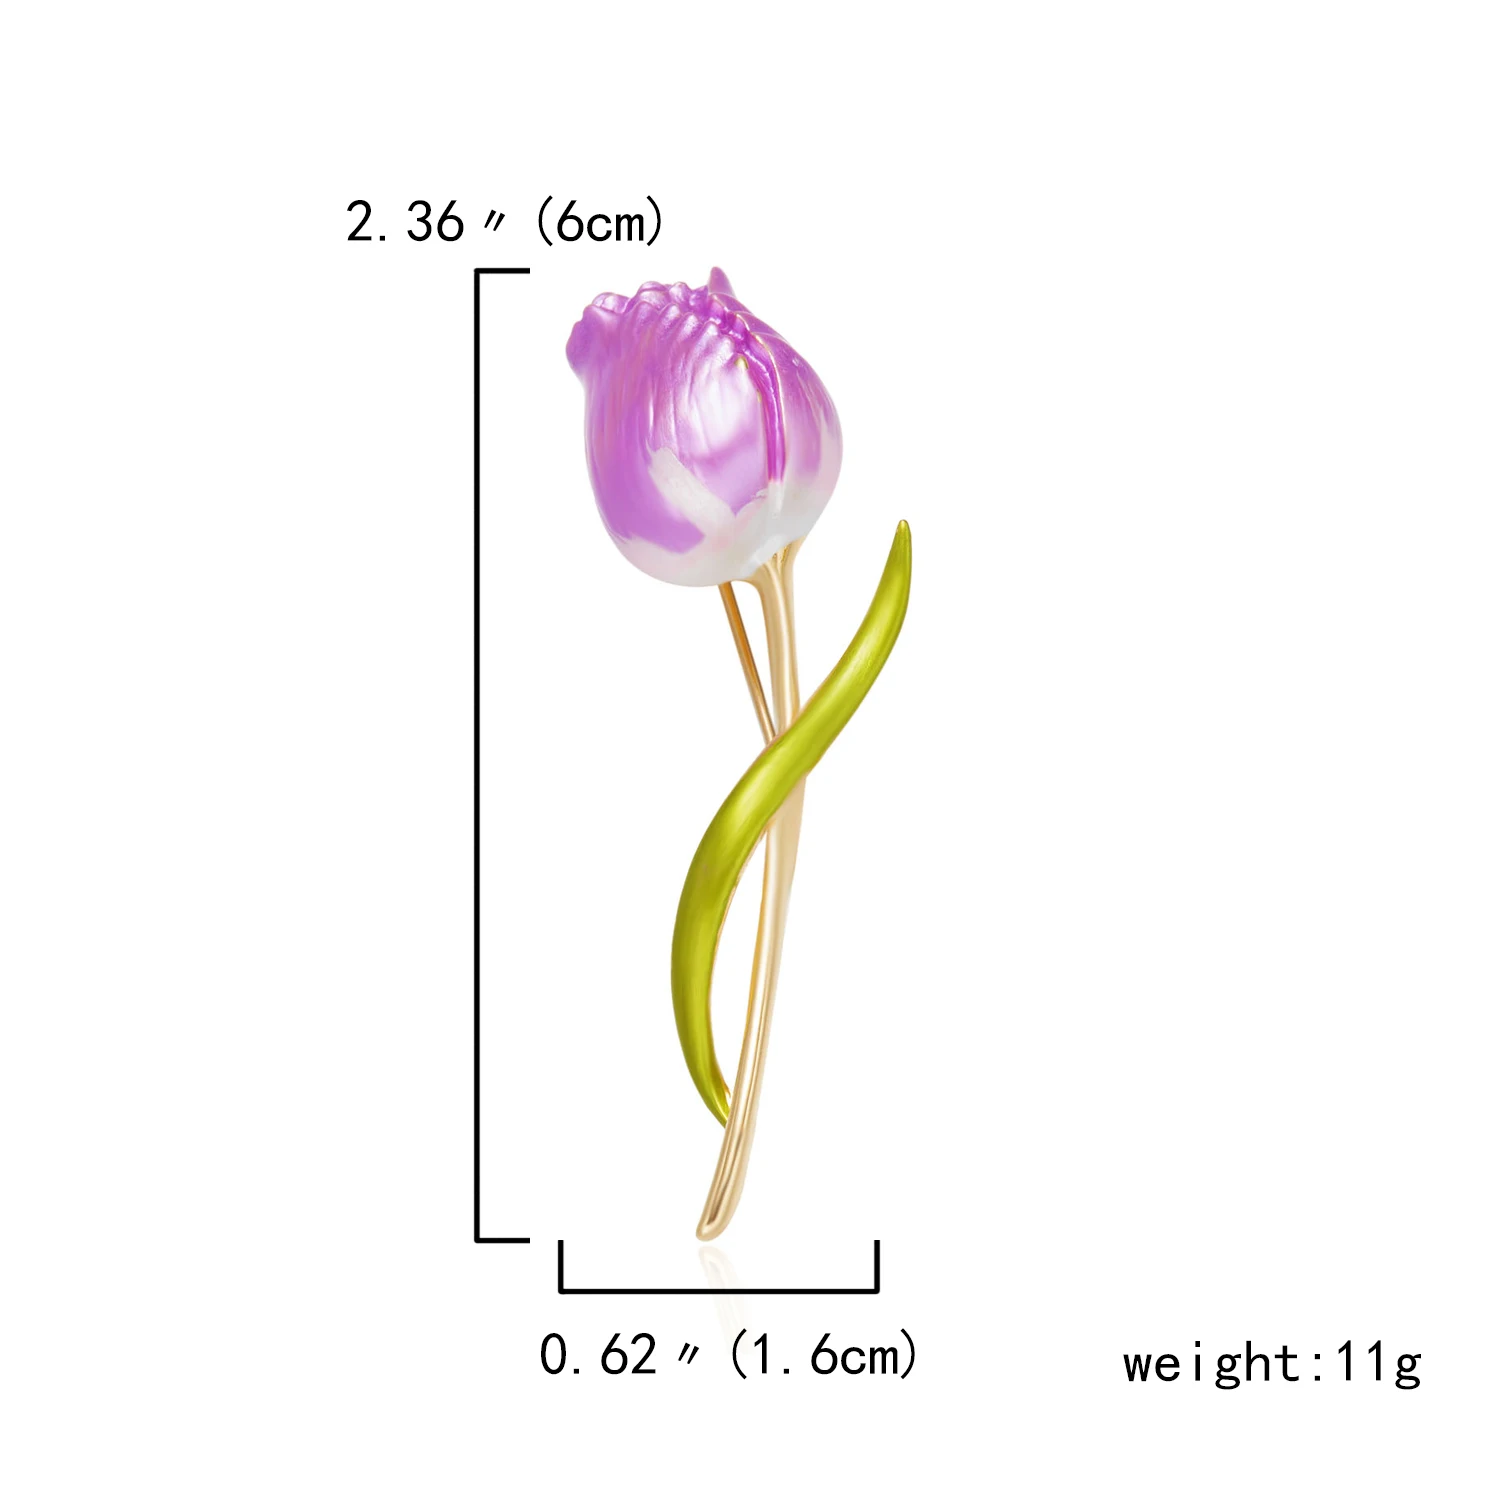 Il Fascino Dello Smalto Tulip Spille A Fiore Per Le Donne Di Temperamento Elegante Matrimoni Partito Ufficio Pin Spilla Moda Accessori Per Abbigliamento